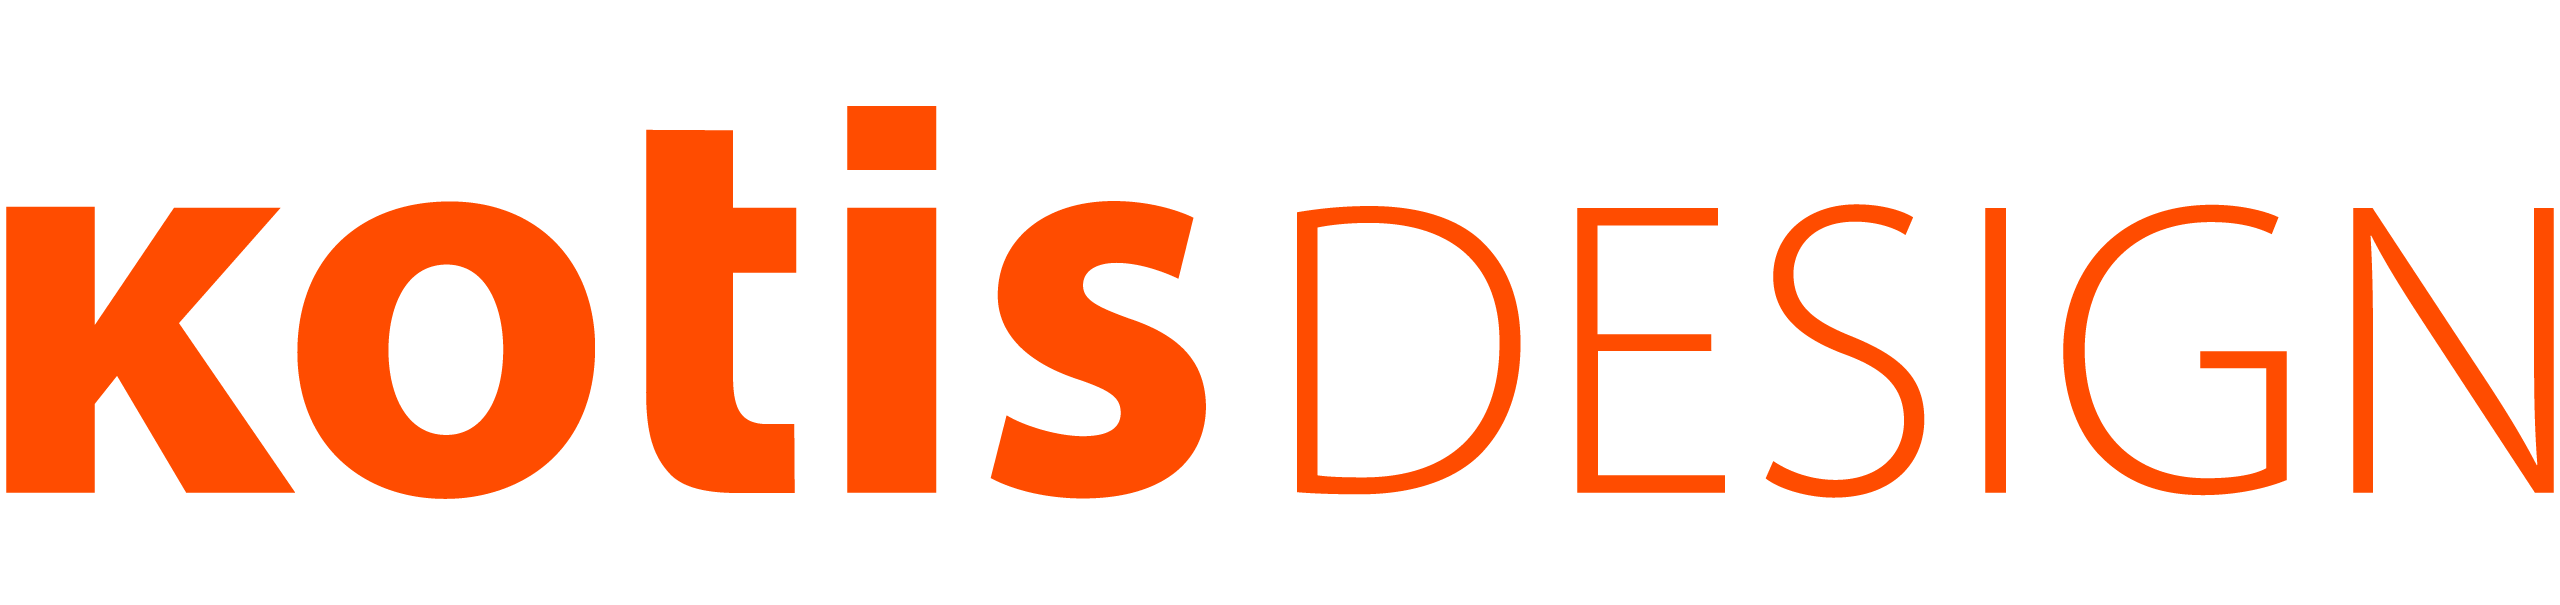 2-kotis-design-logo-orange